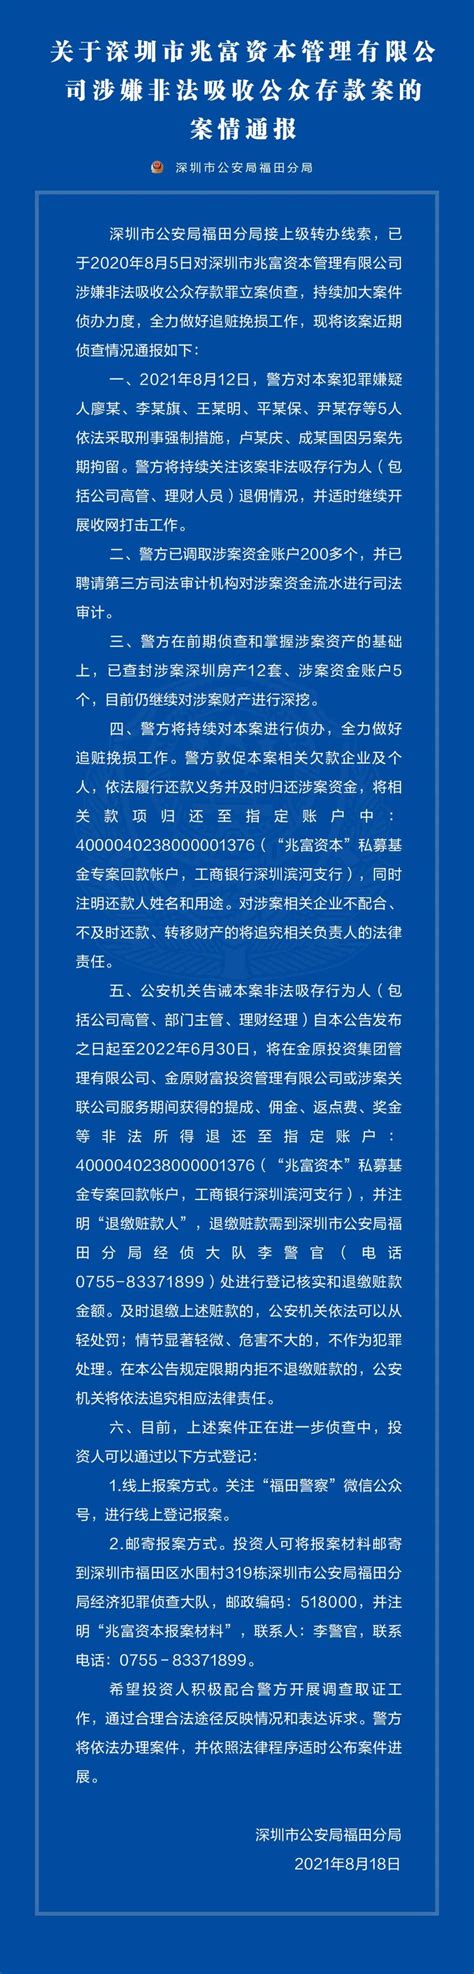 关于深圳市兆富资本管理有限公司涉嫌非法吸收公众存款案的案情通报_深圳新闻网